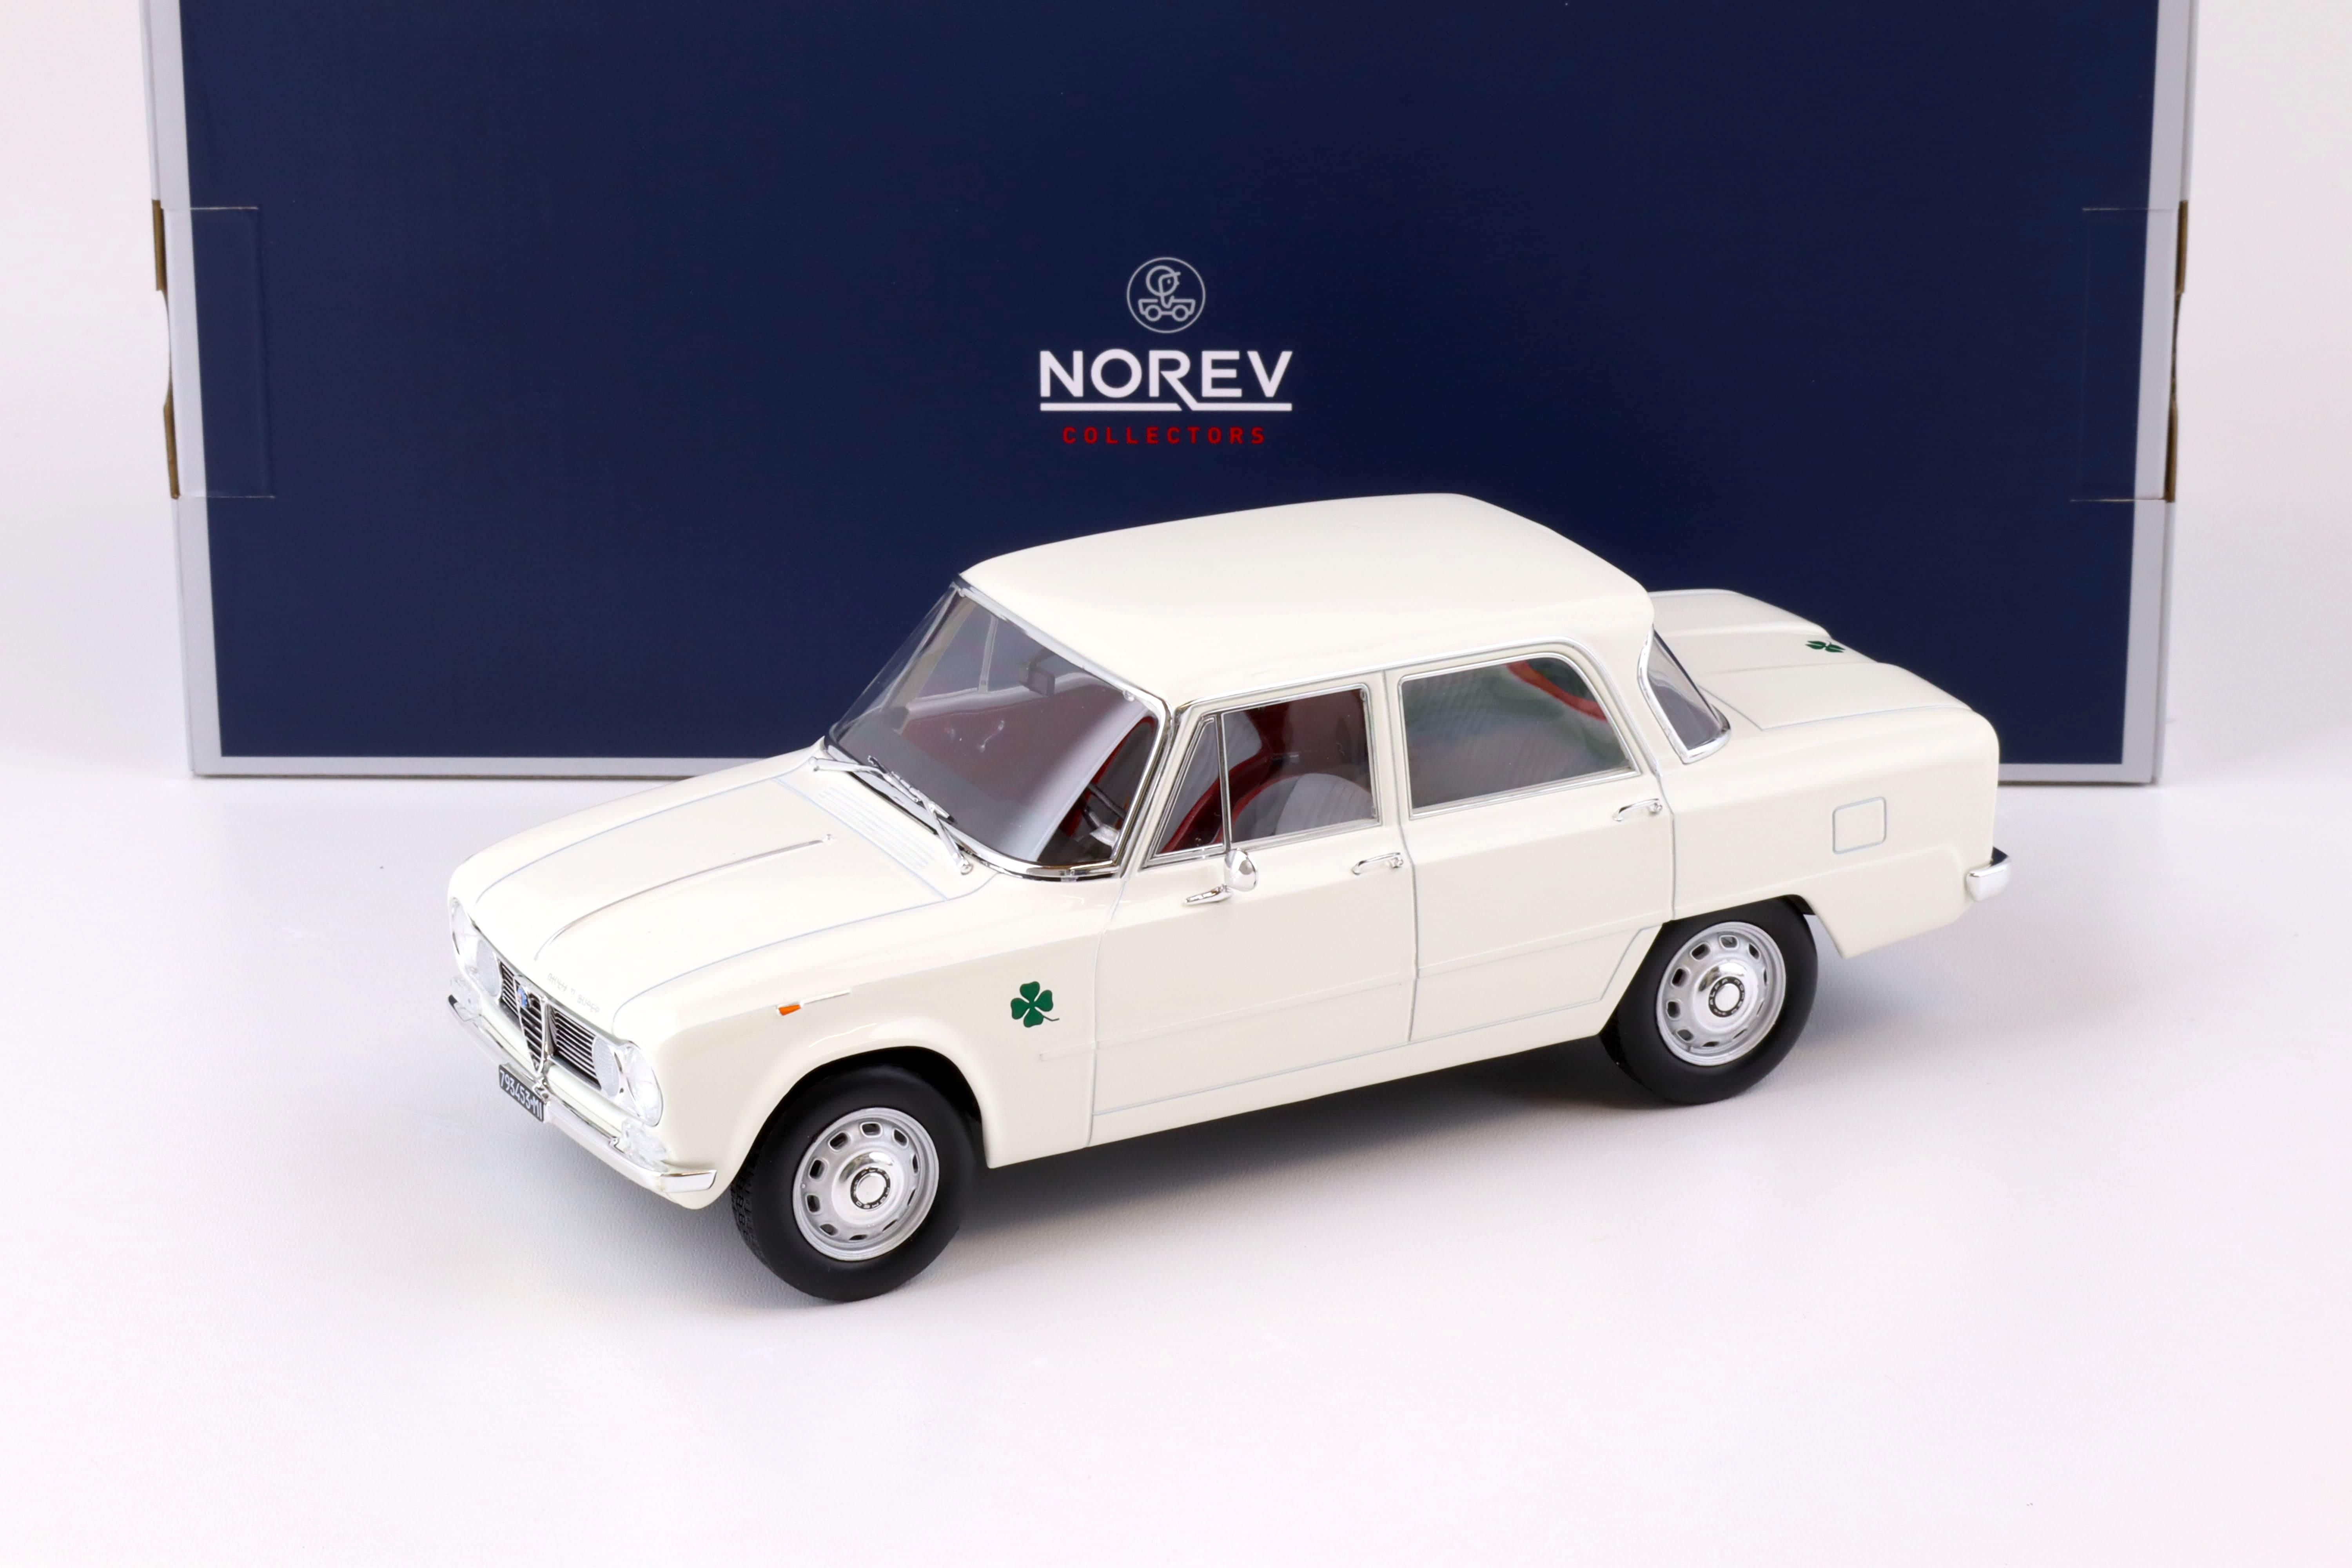 1:18 Norev Alfa Romeo Giulia TI Super 1963 white